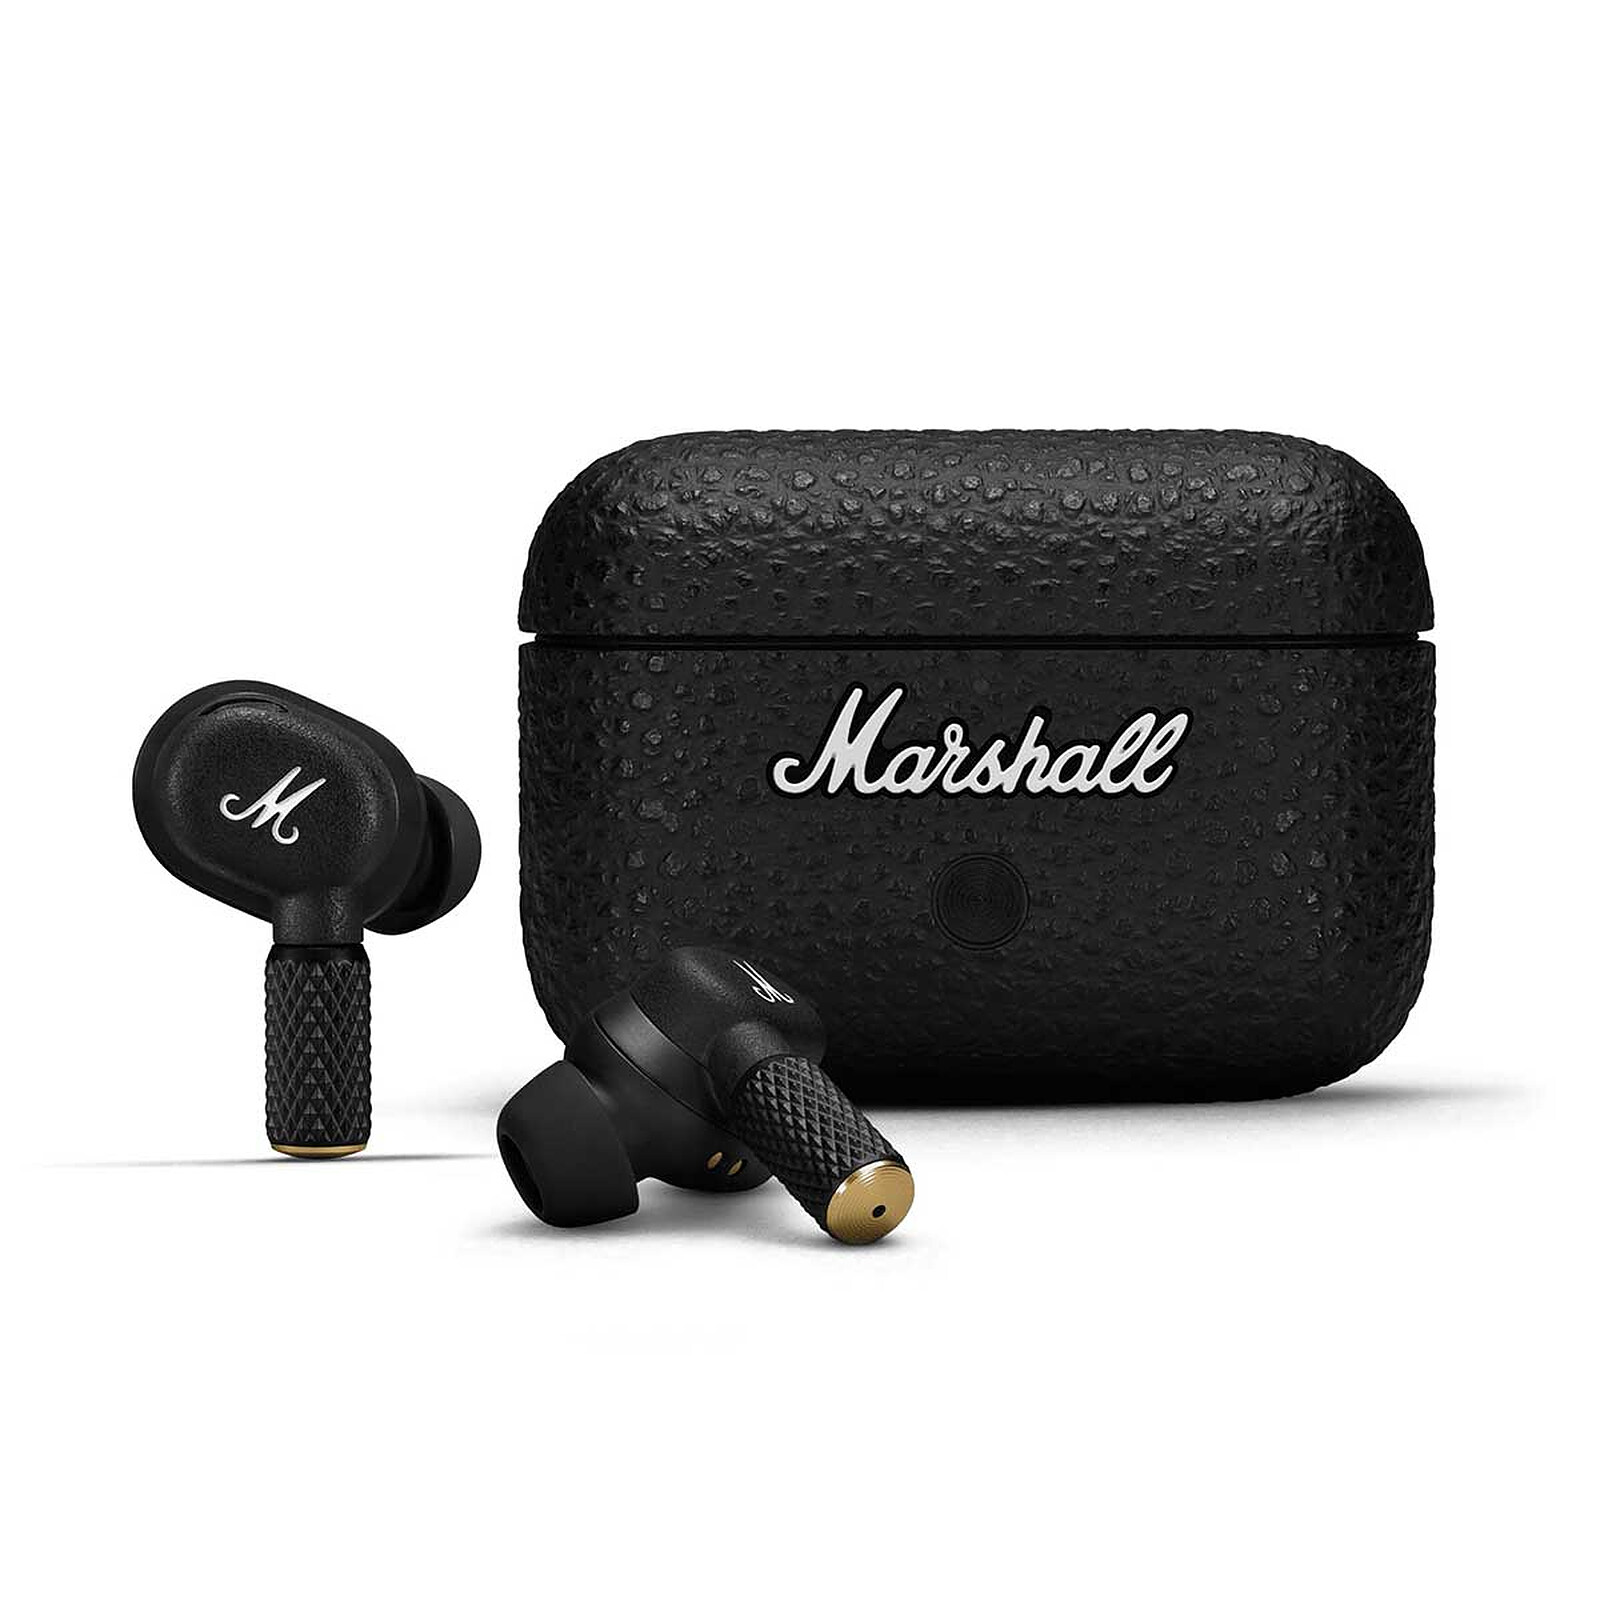 Marshall-Casque sans fil MAJOR IV avec micro, écouteurs Bluetooth